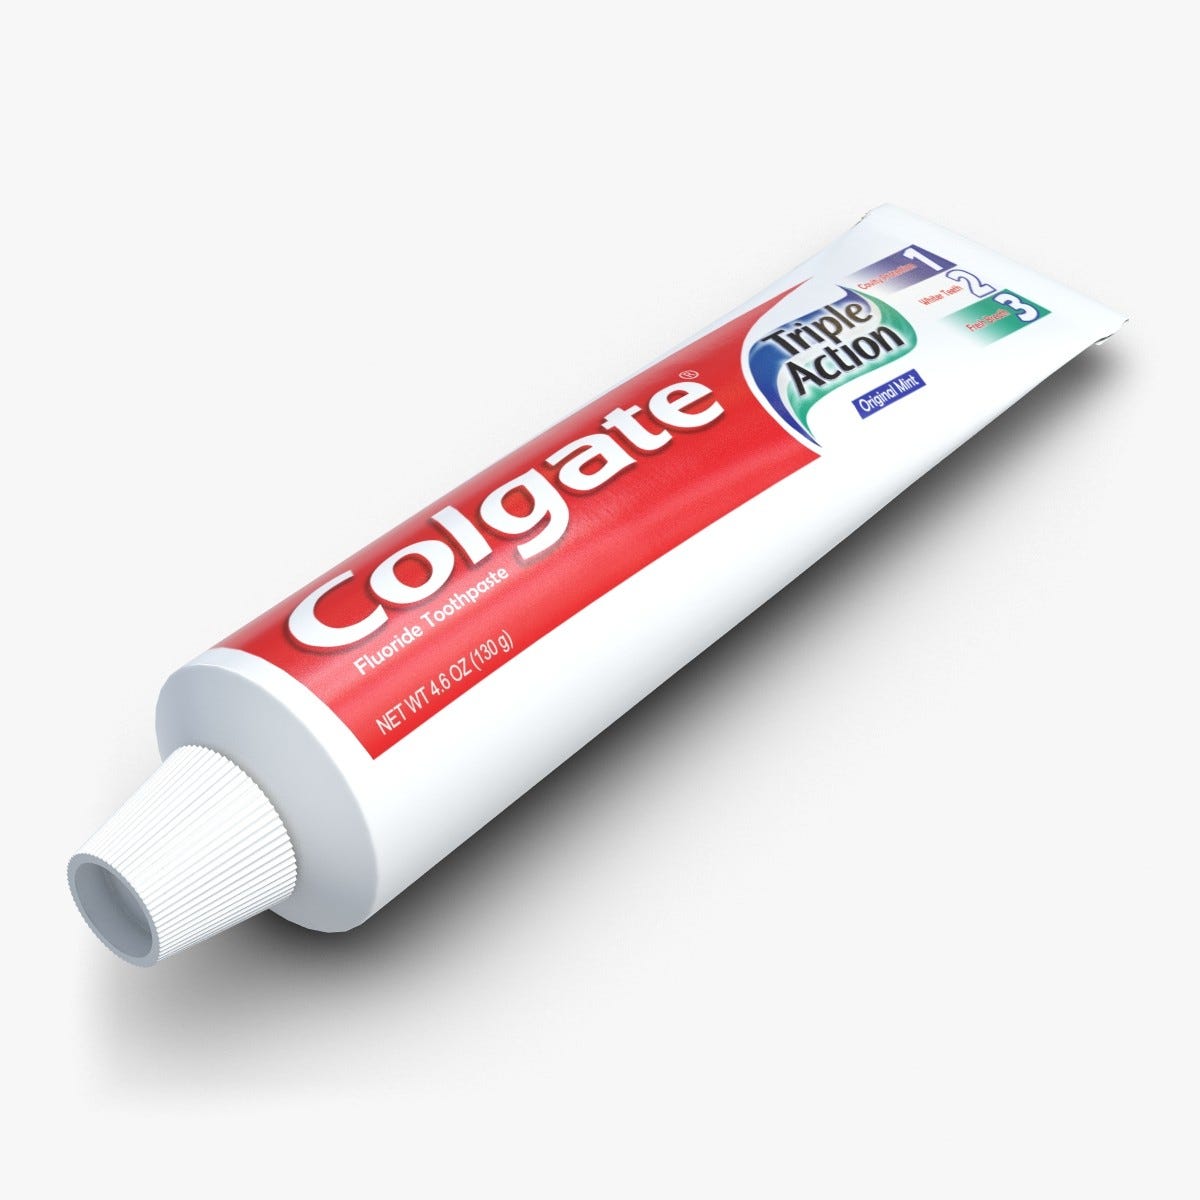 Как выглядит тюбик. Тюбик зубной пасты Колгейт. Зубная паста Toothpaste. Паста Колгейт тюбик. Изображение тюбика пасты.